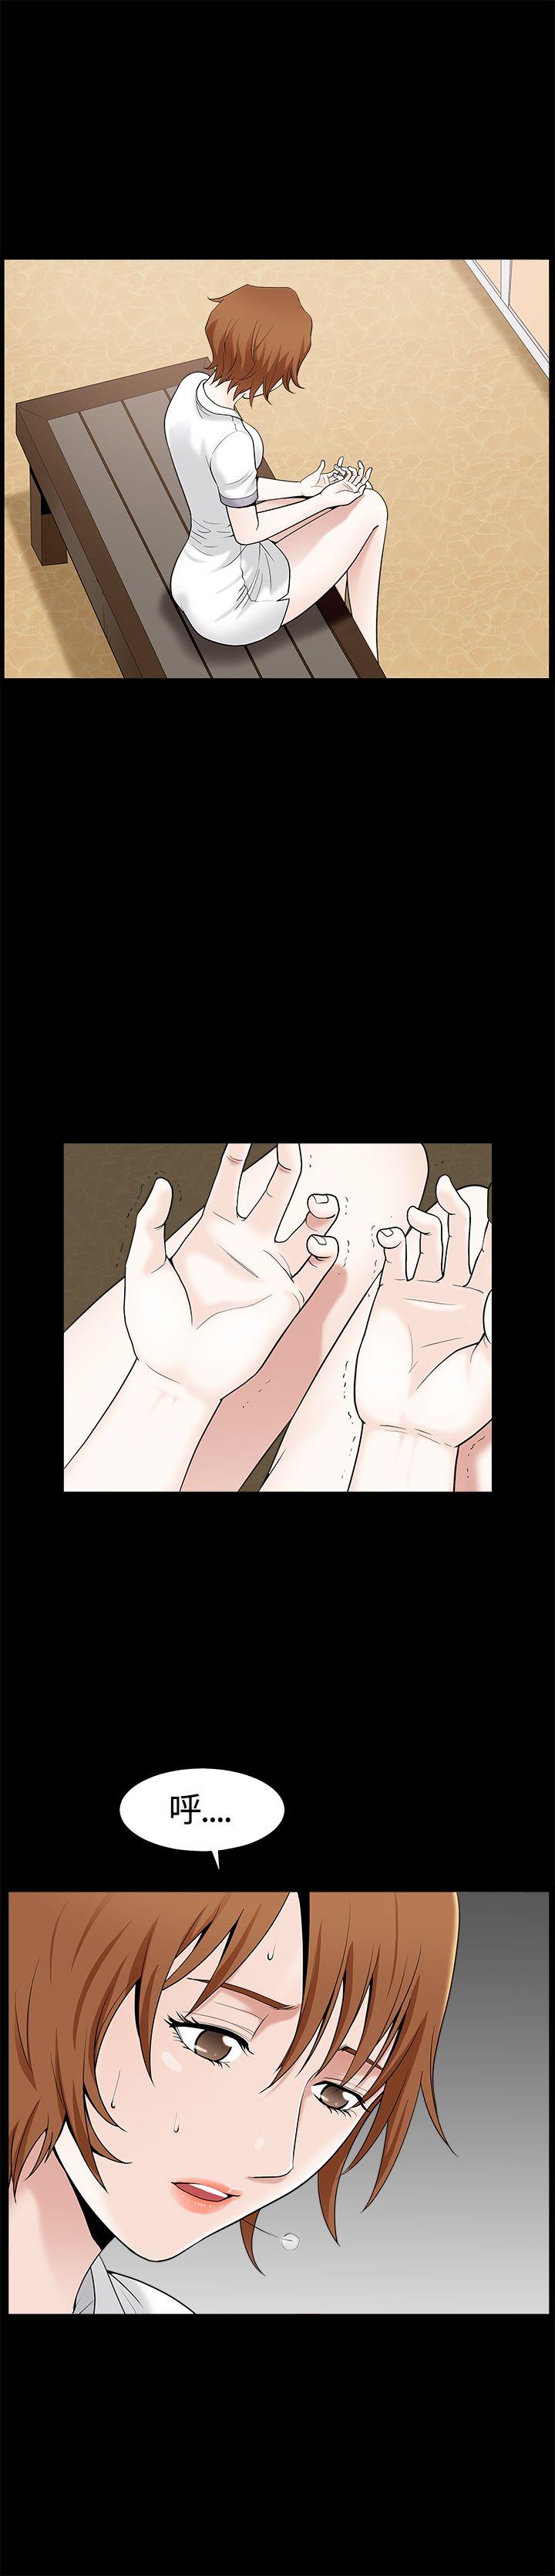 韩国污漫画 人妻性解放3:粗糙的手 第12话 1